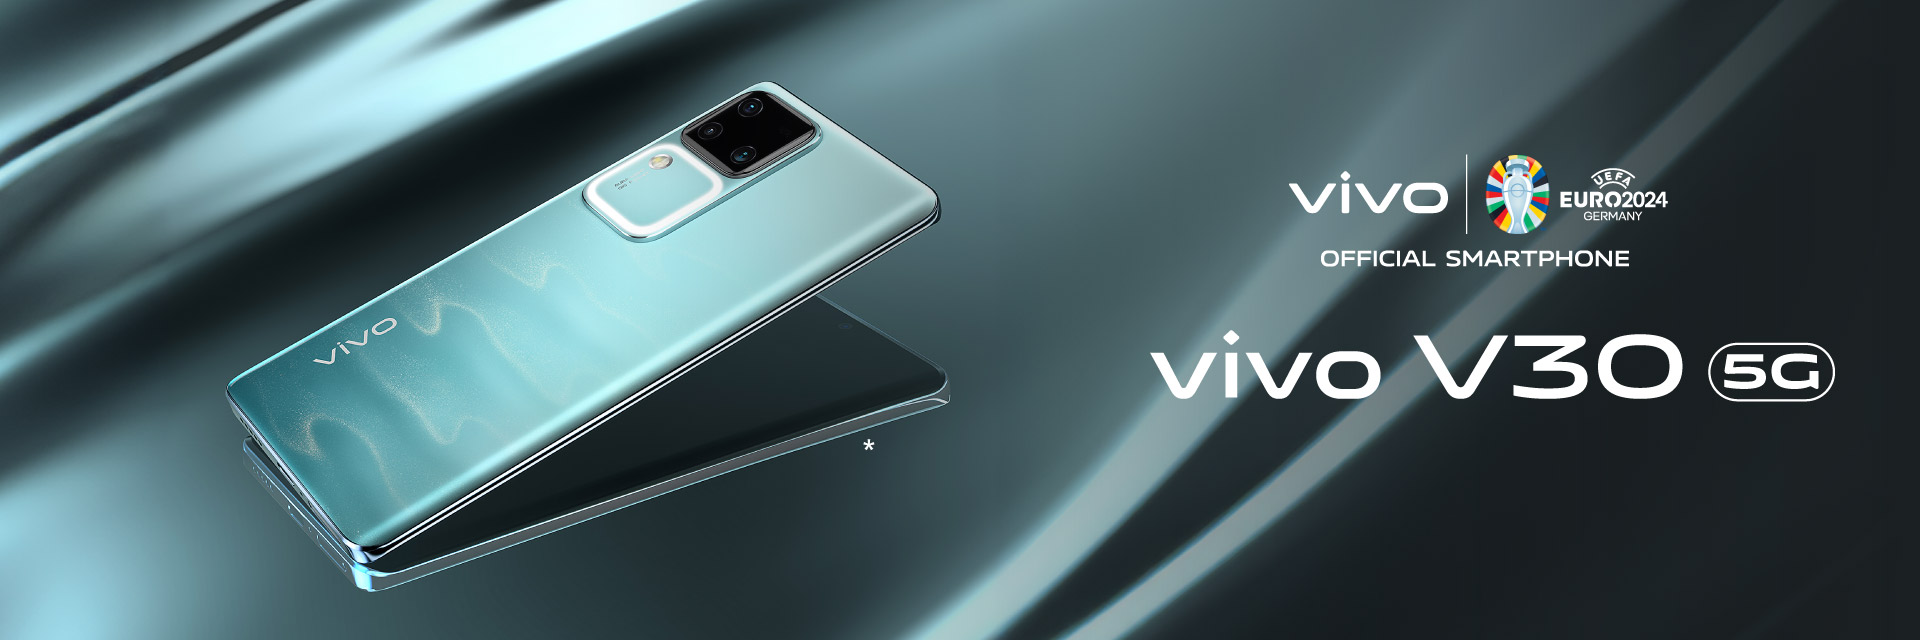 Vivo Brand Banner - V30 5G